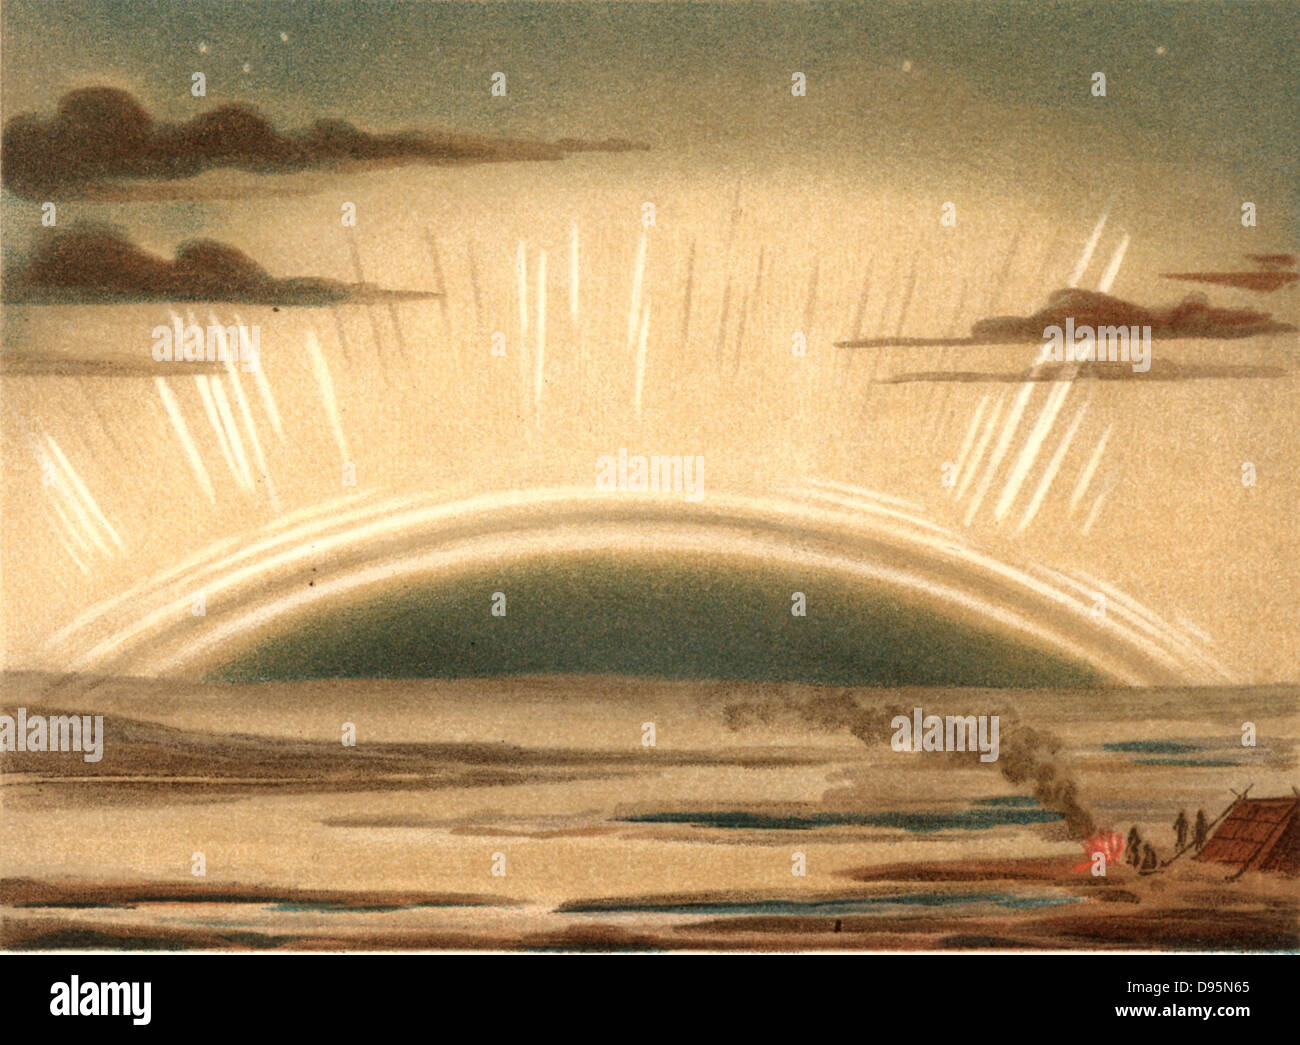 Aurora Borealis ou Northern Lights a observé à partir de l'île de Sky, de l'Écosse, le 11 septembre 1874. Causés par les particules à haute vitesse éjectées du Soleil, ils sont le plus fréquemment observées au cours des périodes d'un maximum de taches solaires. À partir de 'ie' par Naturkrafte M Wilhelm Meyer (Leipzig, 1903). Chromolithographie. Banque D'Images